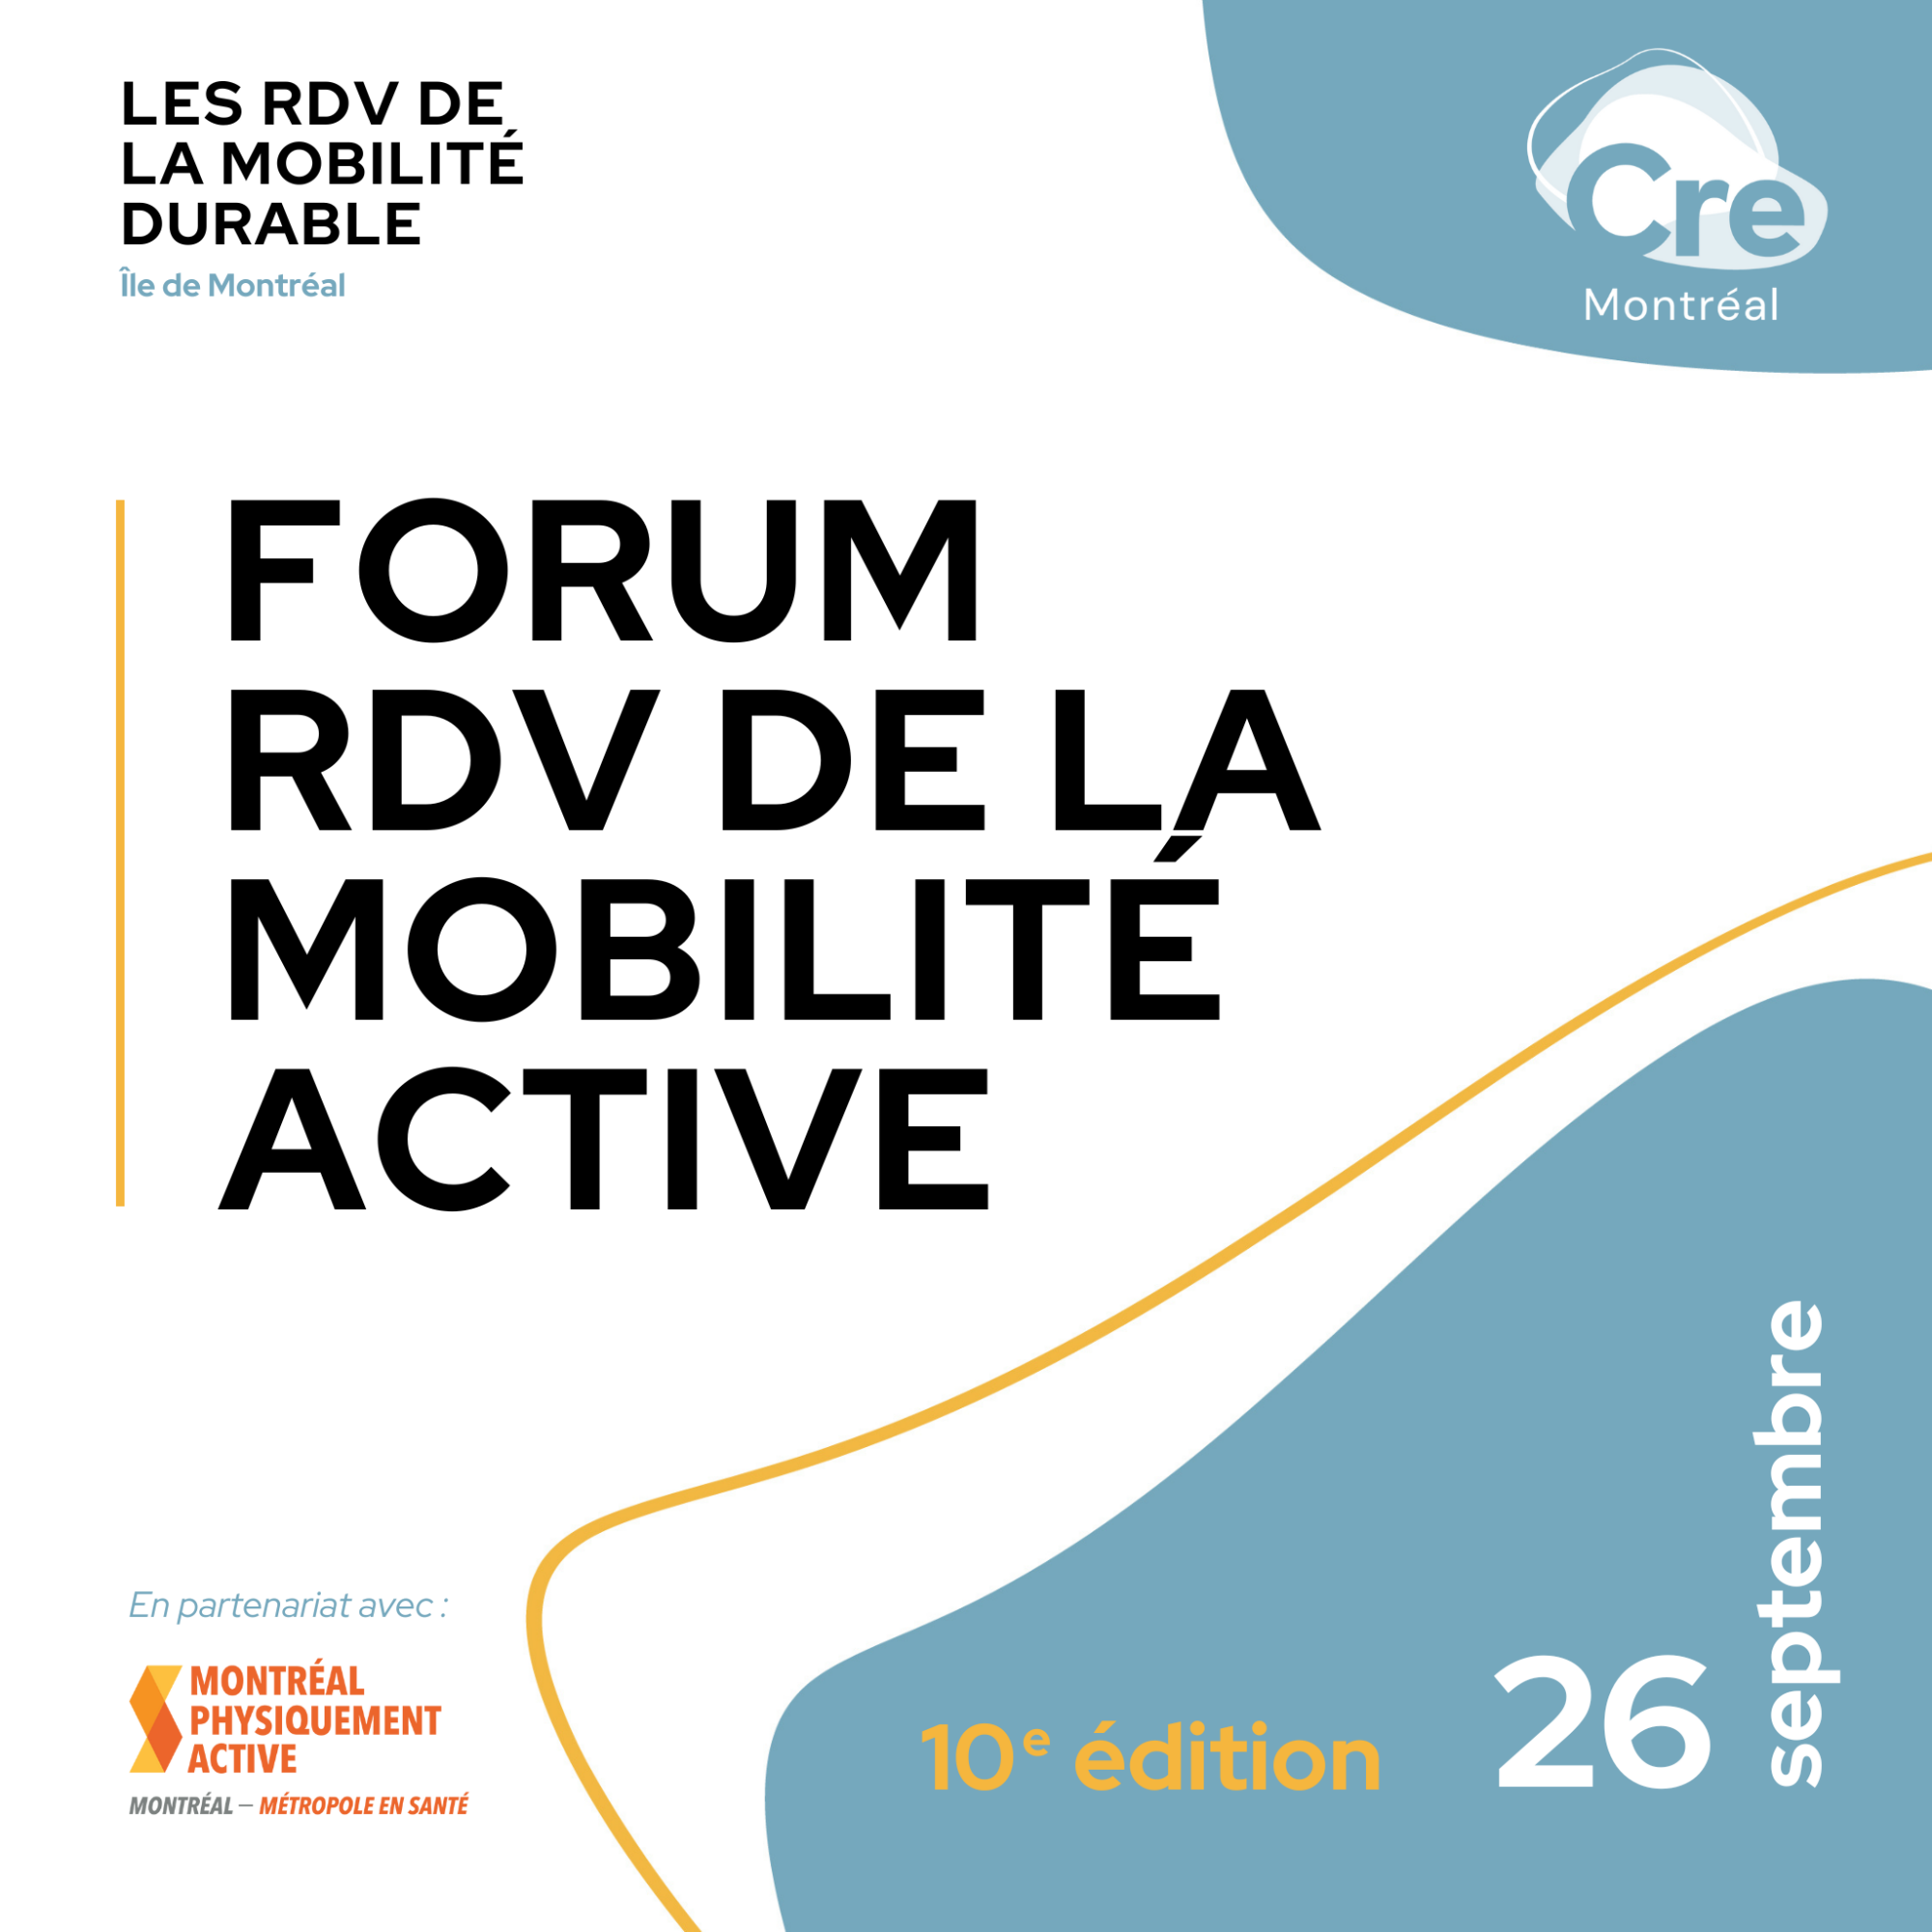 Forum RDV de la mobilité active